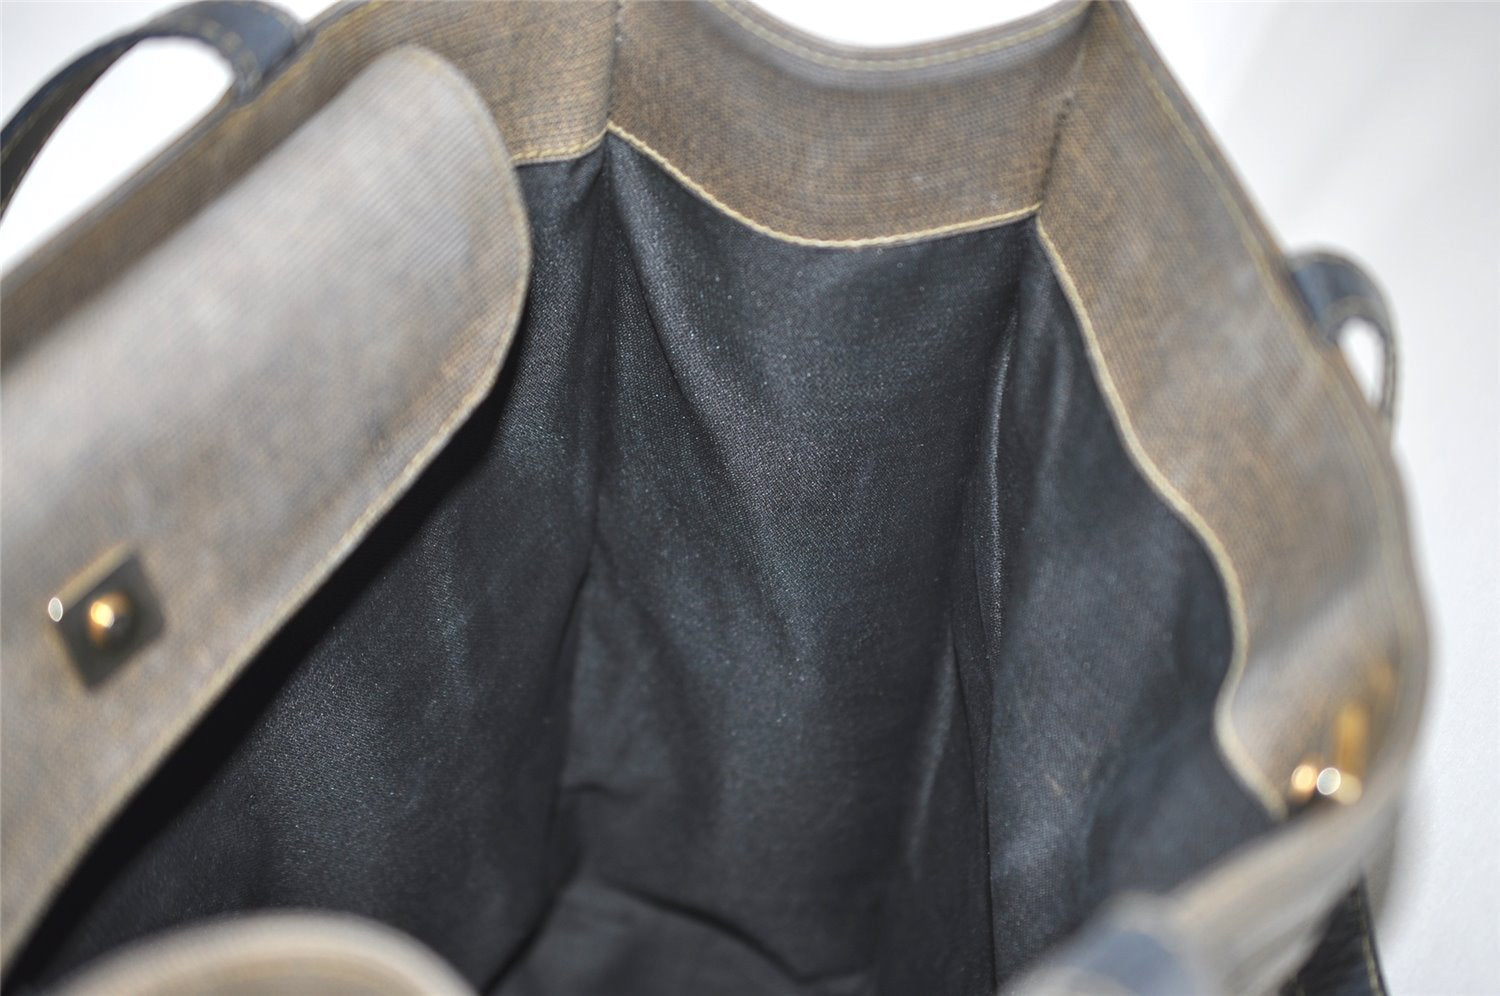 Authentic FENDI Vintage PVC Leather Shoulder Tote Bag Brown 6318J